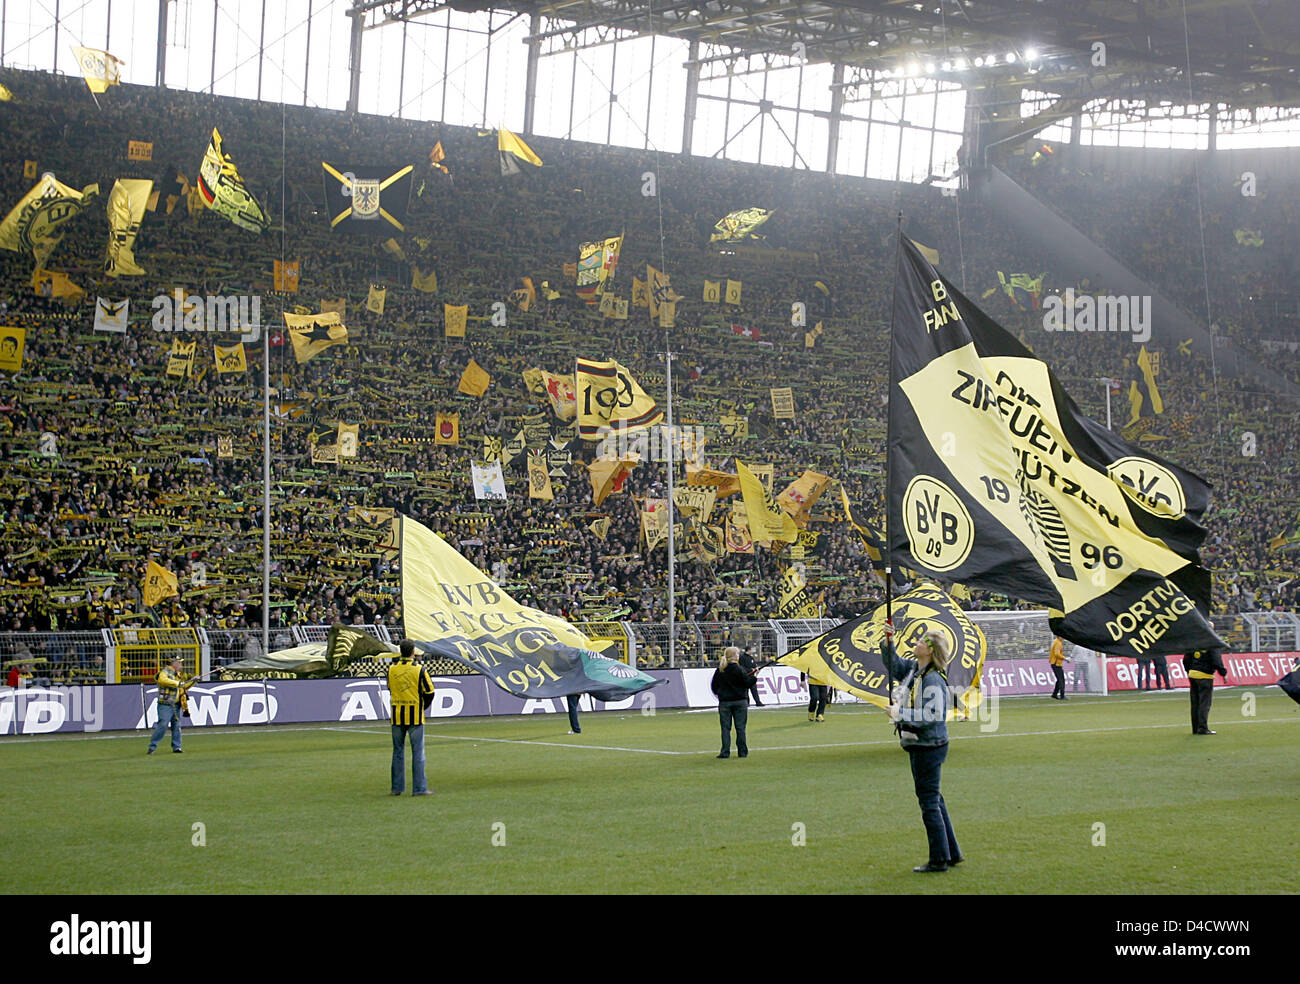 Dortmunder Fans Welle Flaggen während der Bundesliga Spiel Borussia Dortmund gegen Hansa Rostock am Signal Iduna Park in Dortmund, Deutschland, 23. Februar 2008. Das Spiel endete 1: 0. Foto: Franz-Peter Tschauner Stockfoto